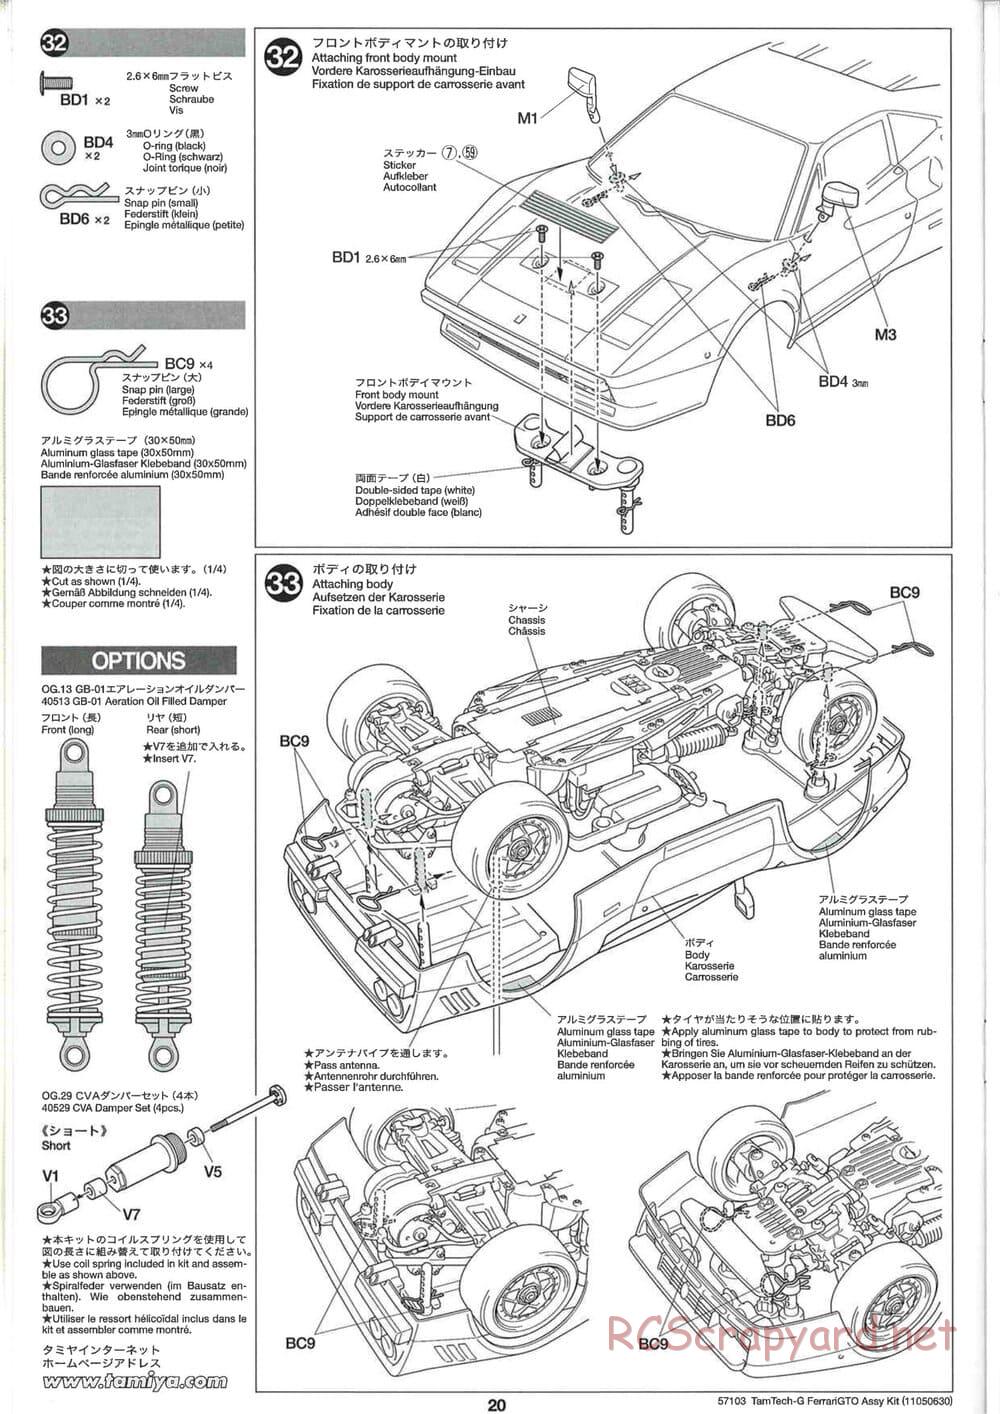 Tamiya - Ferrari 288 GTO - GT-01 Chassis - Manual - Page 20